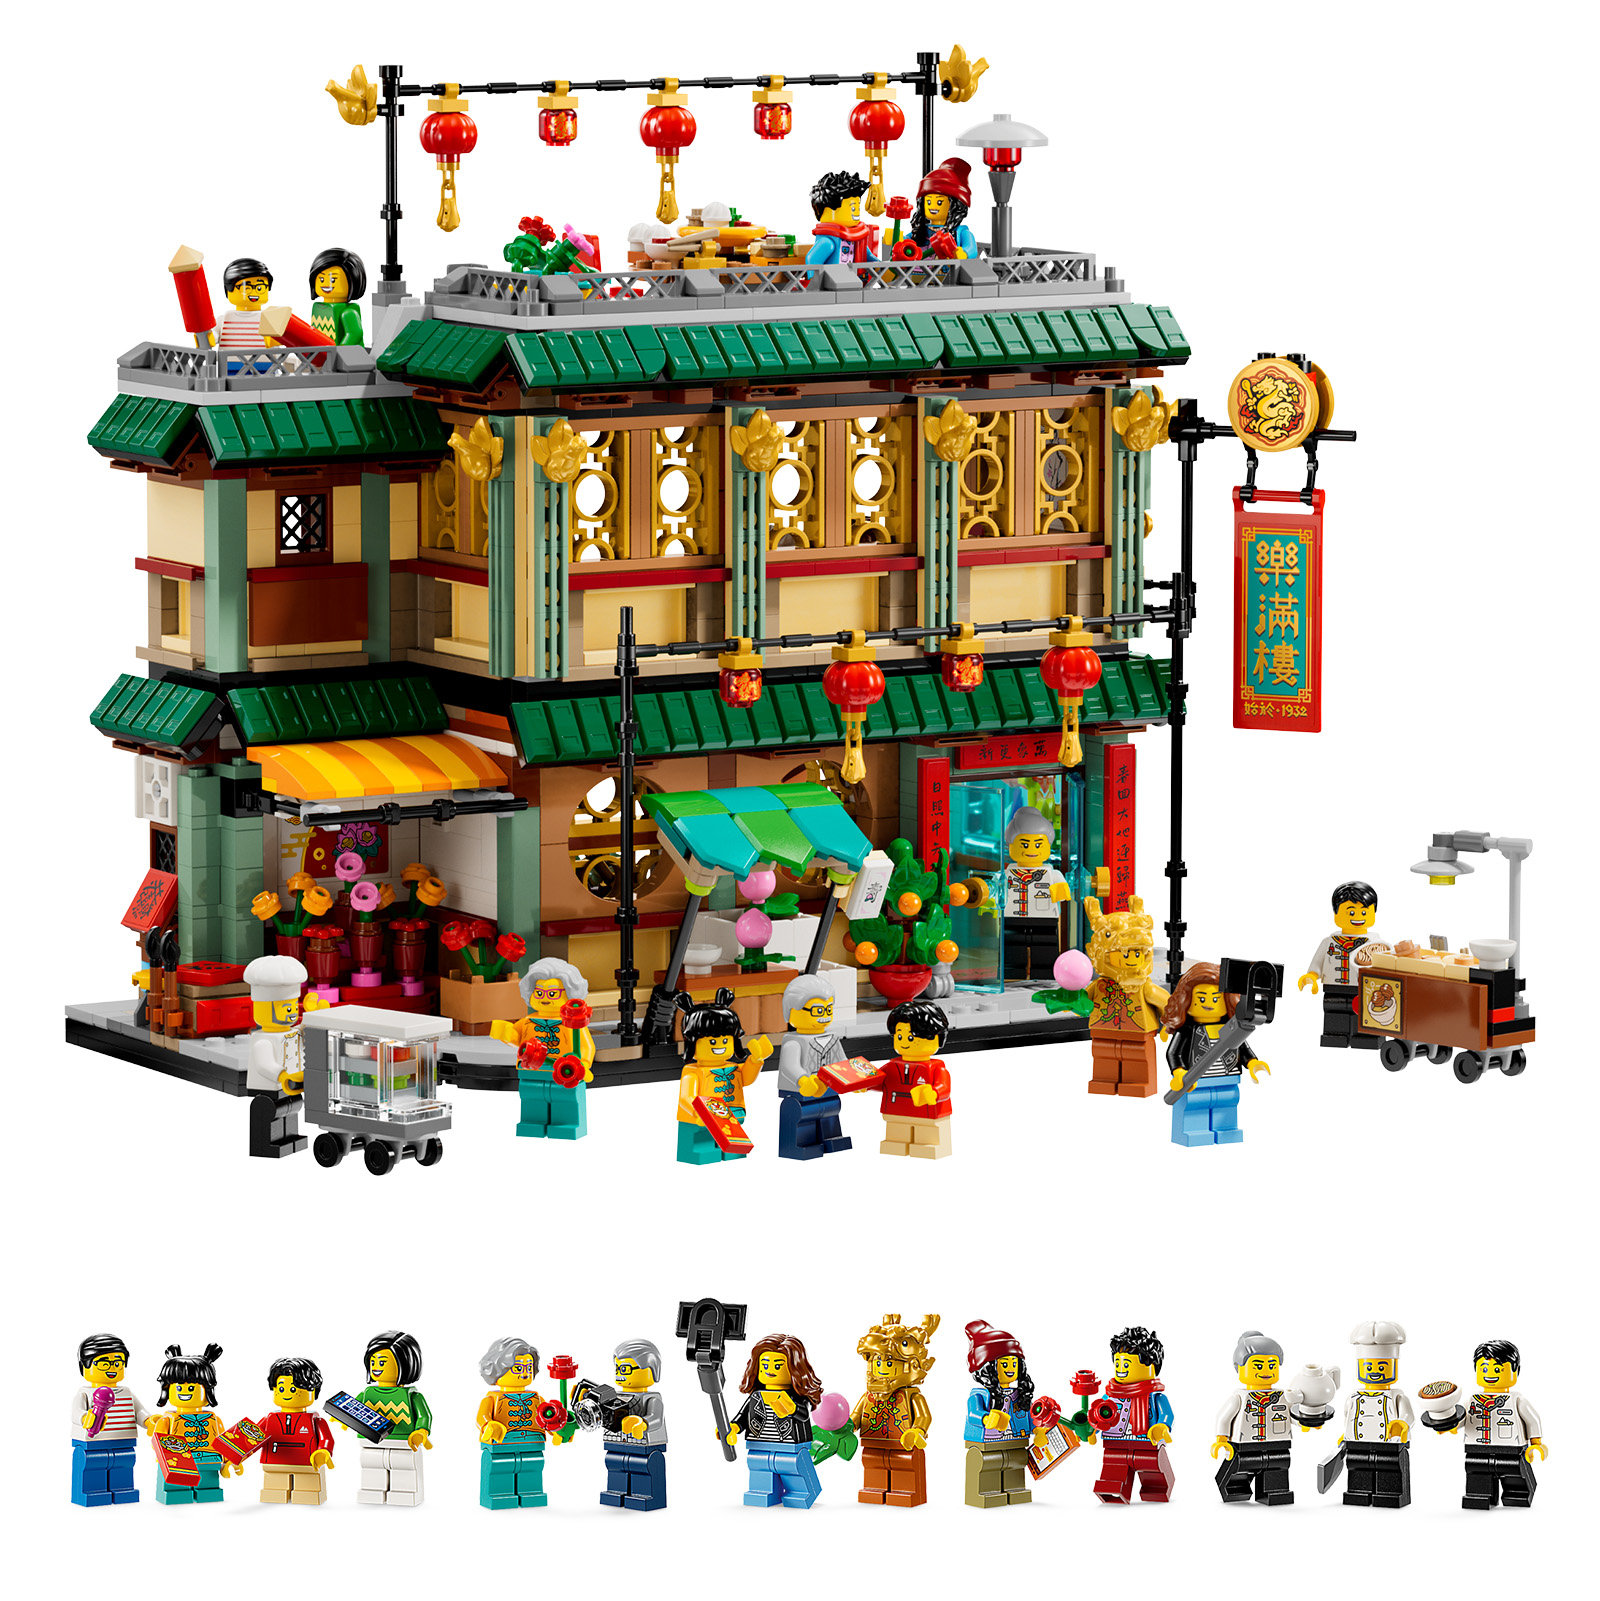 Aperçu des nouveaux LEGO Nouvel An Chinois de Janvier 2024